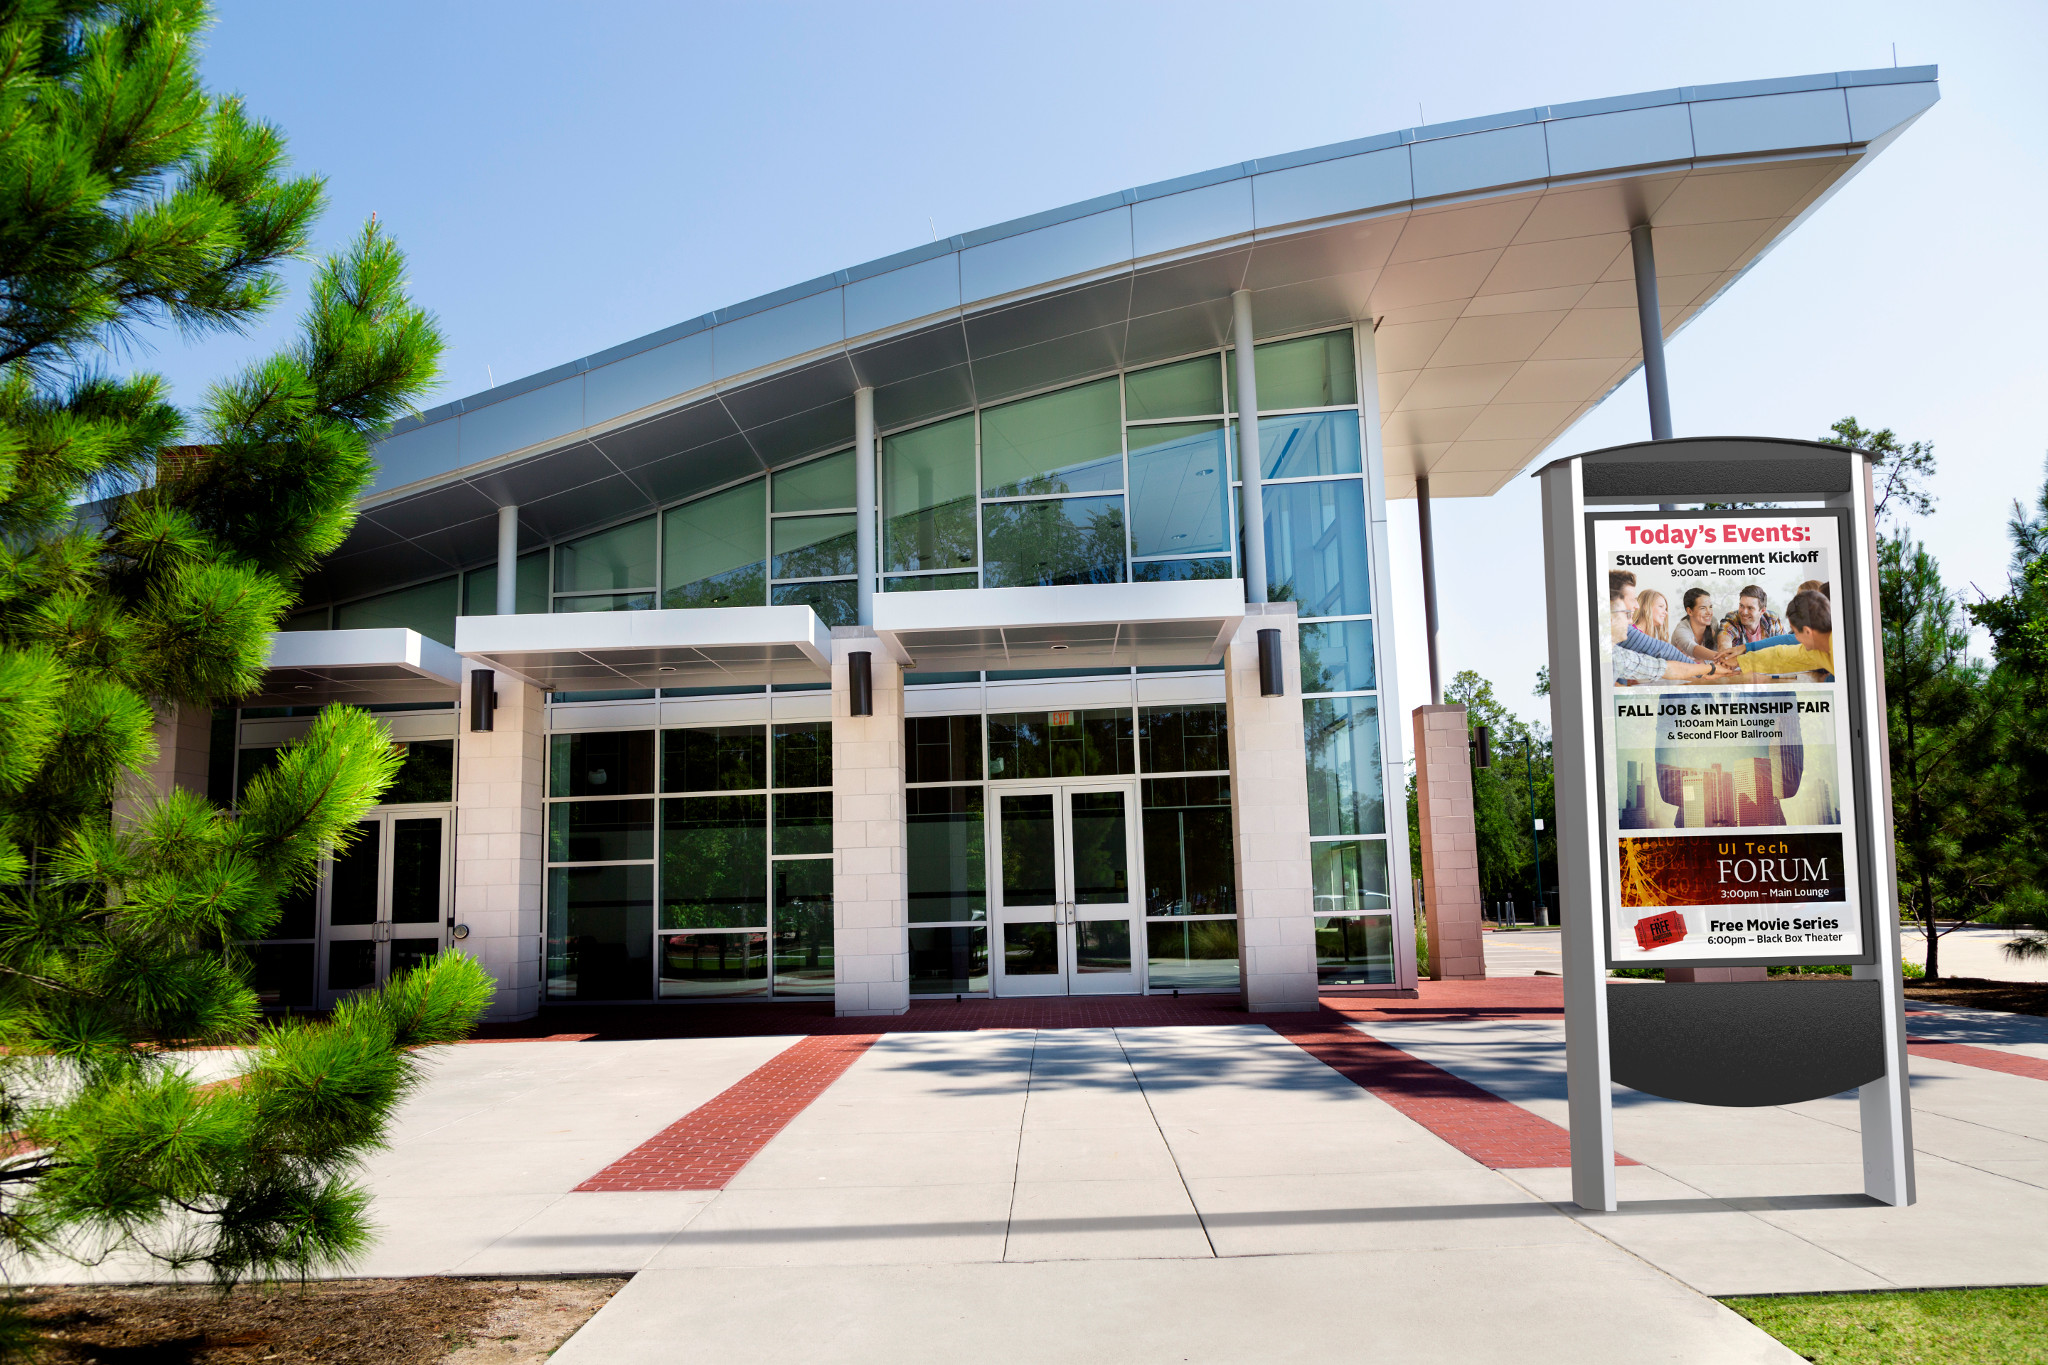 Peerless-AV’s new Smart City Kiosk won a Best New Kiosk Award at the Digital Signage Expo in March. 